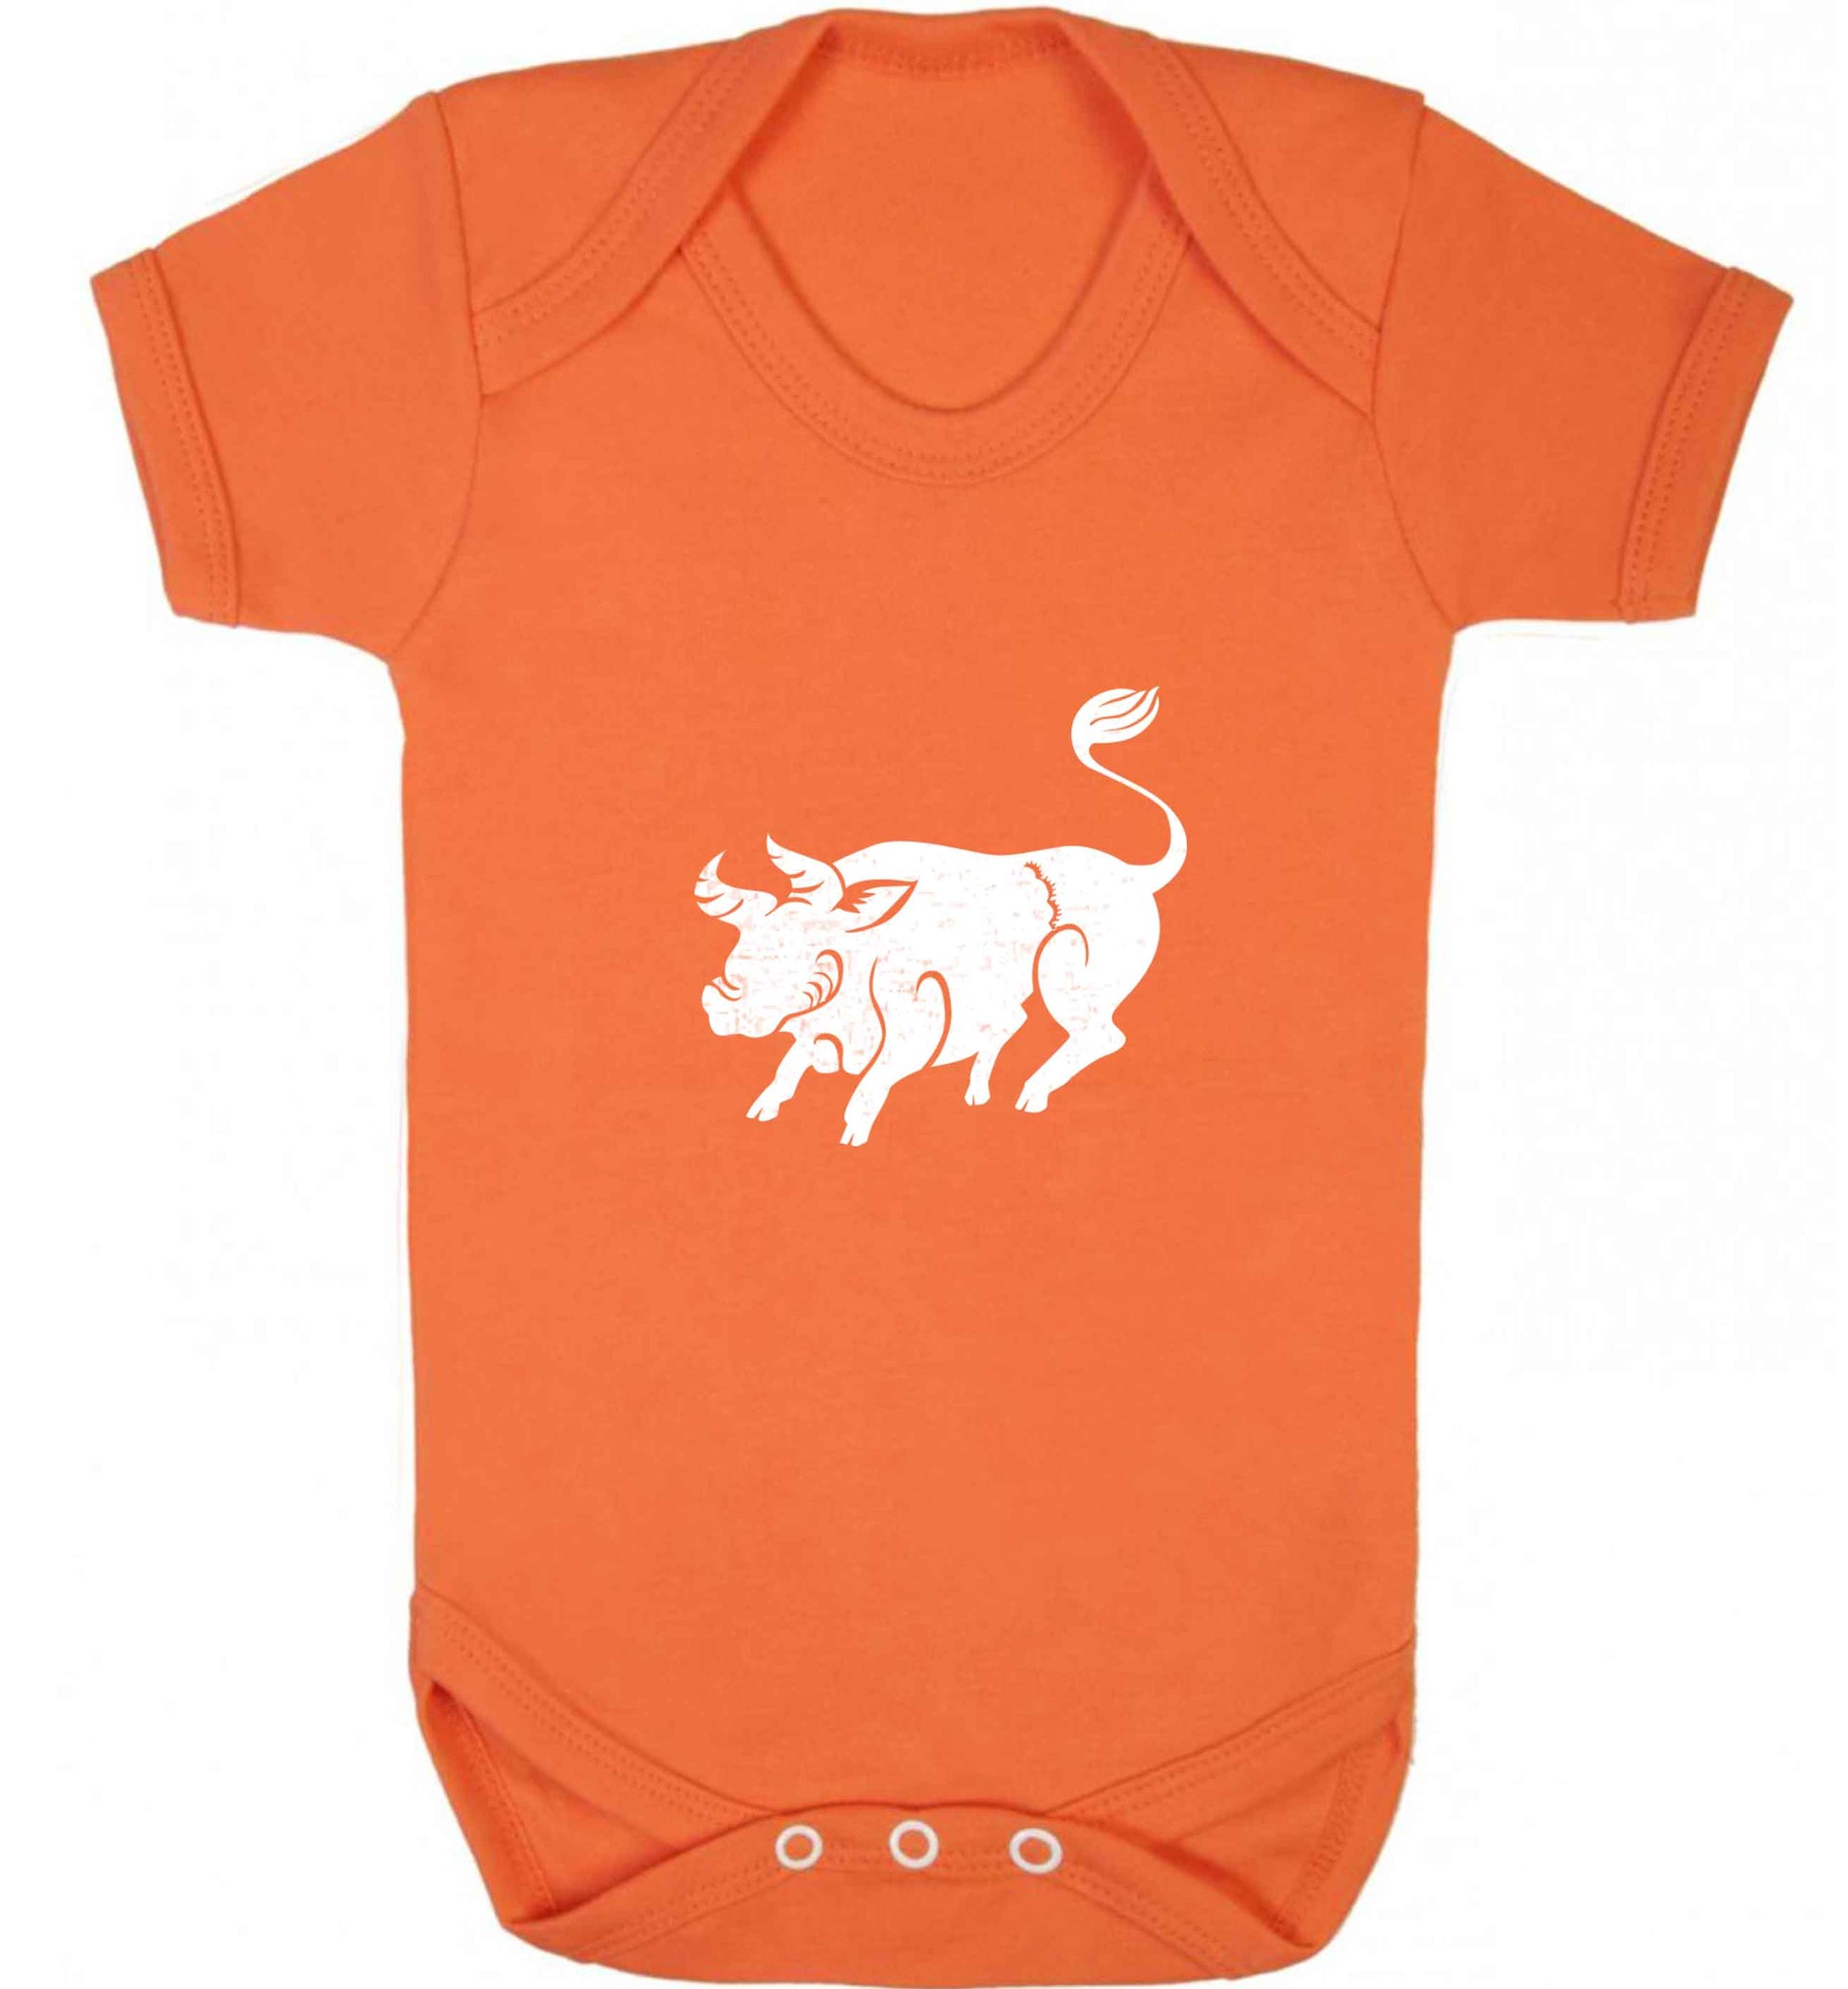 Blue ox baby vest orange 18-24 months